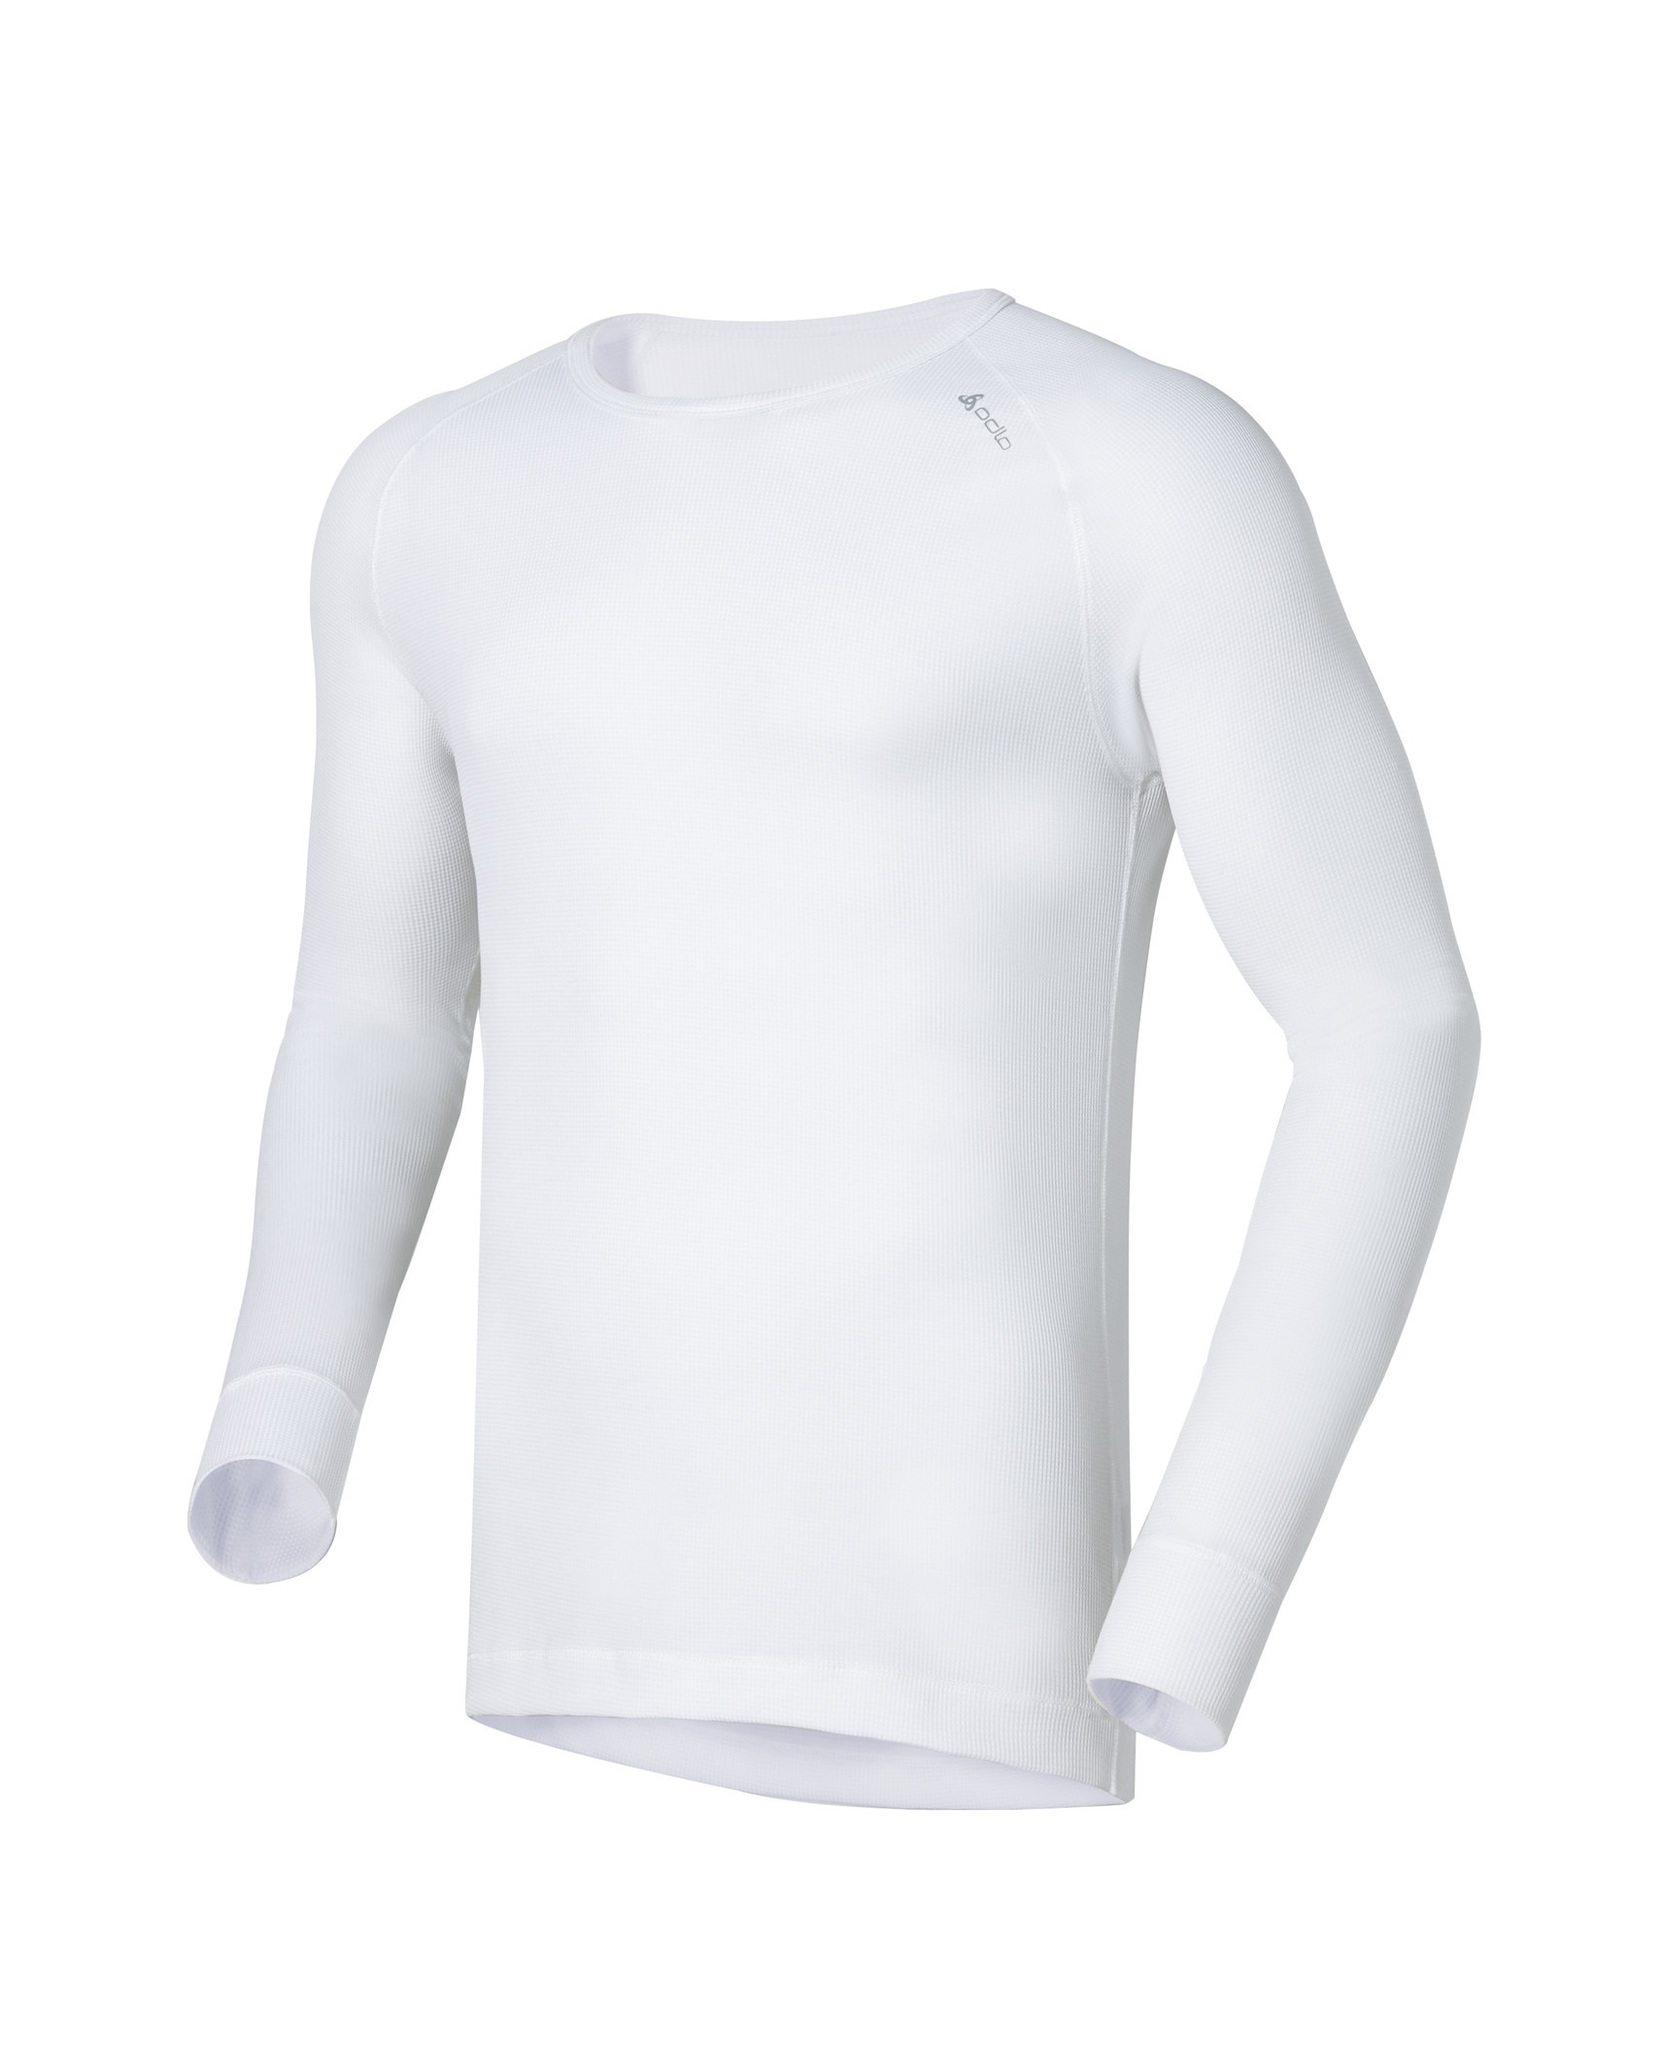 Мужское термобелье футболка с длинным рукавом Odlo L/S Crew Neck Cubic  140052-10000 купить в Интернет-магазин Five-sport.ru